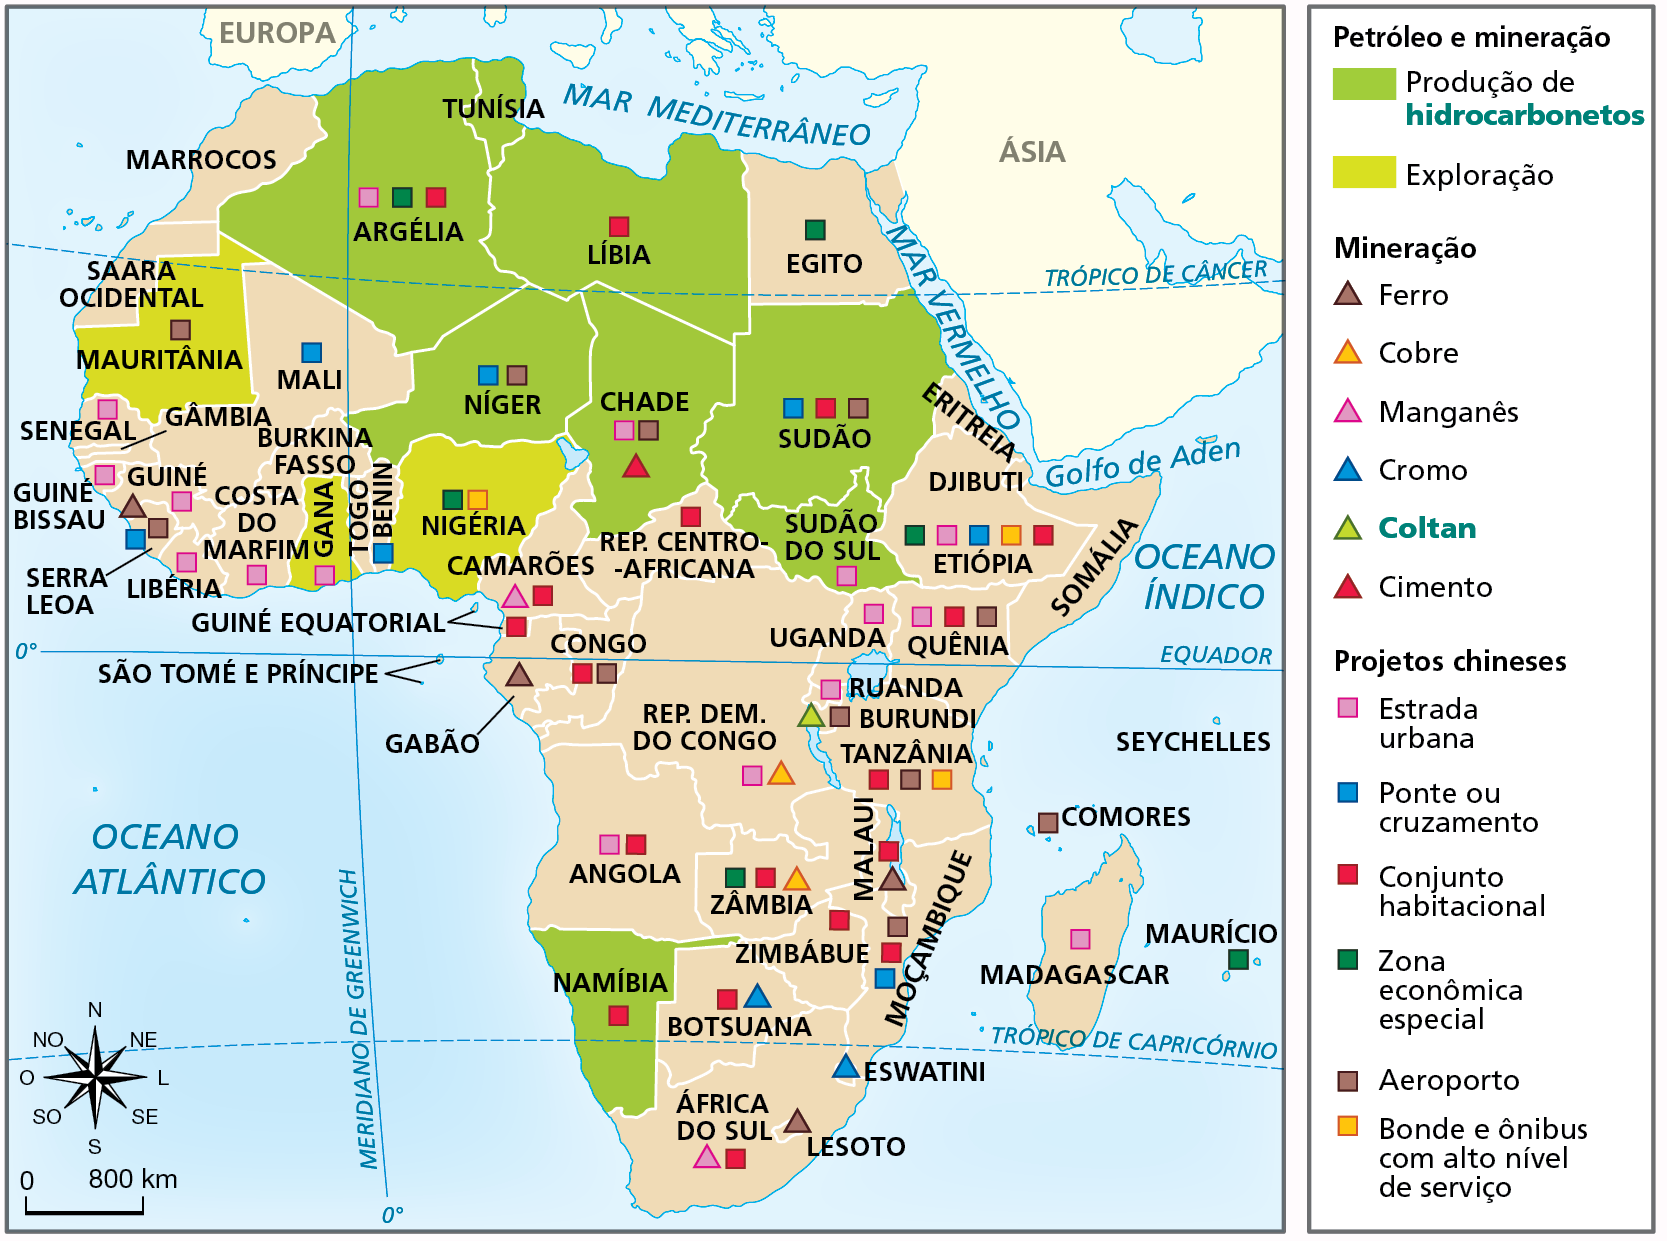 Mapa. África: principais investimentos chineses, 2018. Mapa do continente africano com a divisão política.  Petróleo e mineração. Produção de hidrocarbonetos: Argélia, Tunísia, Líbia, Níger, Chade, Sudão, Sudão do Sul e Namíbia. Exploração: Mauritânia, Gana e Nigéria.  Mineração Ferro: Serra Leoa, Gabão, Lesoto e Malaui. Cobre: Zâmbia, República Democrática do Congo. Manganês: África do Sul e Camarões.  Cromo: Botsuana, Eswatini. Coltan: Burundi.  Cimento: Chade.  Projetos chineses. Estrada urbana: Chade, Sudão do Sul, Uganda, Ruanda, Quênia, Etiópia, República Democrática do Congo, Angola, Libéria, Costa do Marfim, Guiné, Guiné-Bissau, Senegal, Gana, Argélia e Madagascar.  Ponte ou cruzamento: Moçambique, Etiópia, Sudão, Níger, Benin, Serra Leoa e Mali.  Conjunto Habitacional: Moçambique, Zimbábue, Malaui, Tanzânia, Botsuana, Namíbia, África do Sul, Angola, Zâmbia, Congo, Camarões, Guiné Equatorial, República Centro-Africana, Etiópia, Sudão, Líbia, Argélia e Quênia.  Zona econômica especial: Maurício, Zâmbia, Etiópia, Egito, Nigéria e Argélia. Aeroporto: Comores, Moçambique, Burundi, Congo, Chade, Sudão, Níger, Mauritânia, Serra Leoa e Quênia.  Bonde e ônibus com alto nível de serviço: Tanzânia, Etiópia e Nigéria.  À esquerda, rosa dos ventos e escala de 0 a 800 quilômetros.